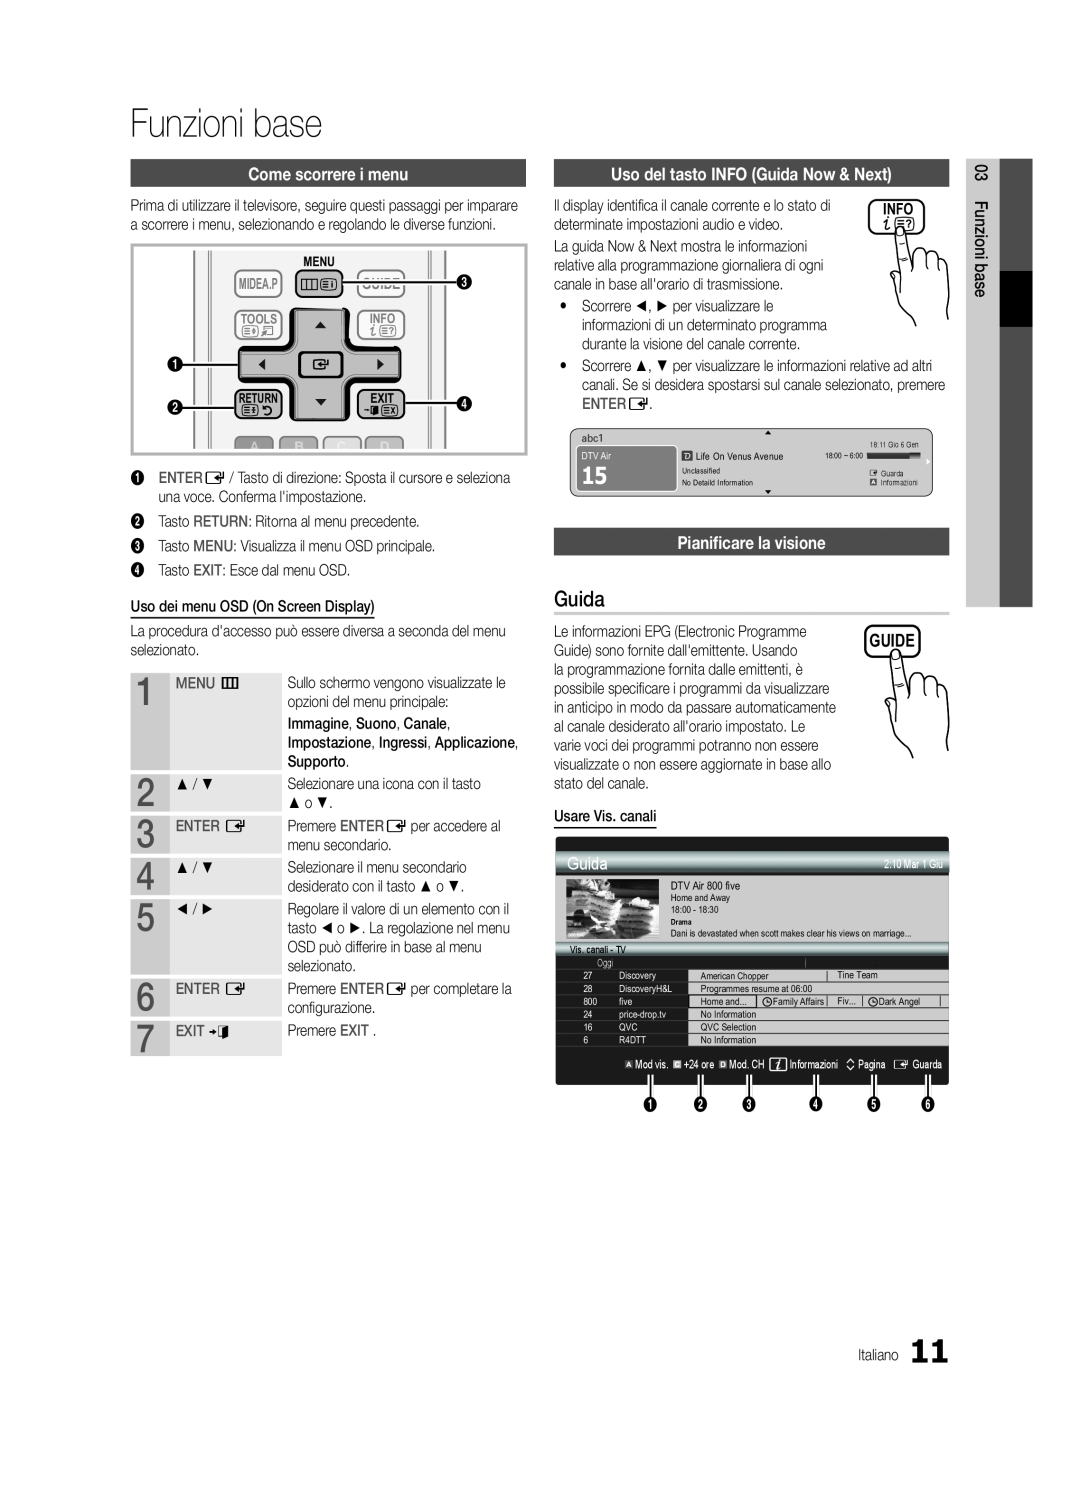 Samsung UE40C5700QSXZG Funzioni base, Come scorrere i menu, Uso del tasto INFO Guida Now & Next, Guide, Entere, MENU m 